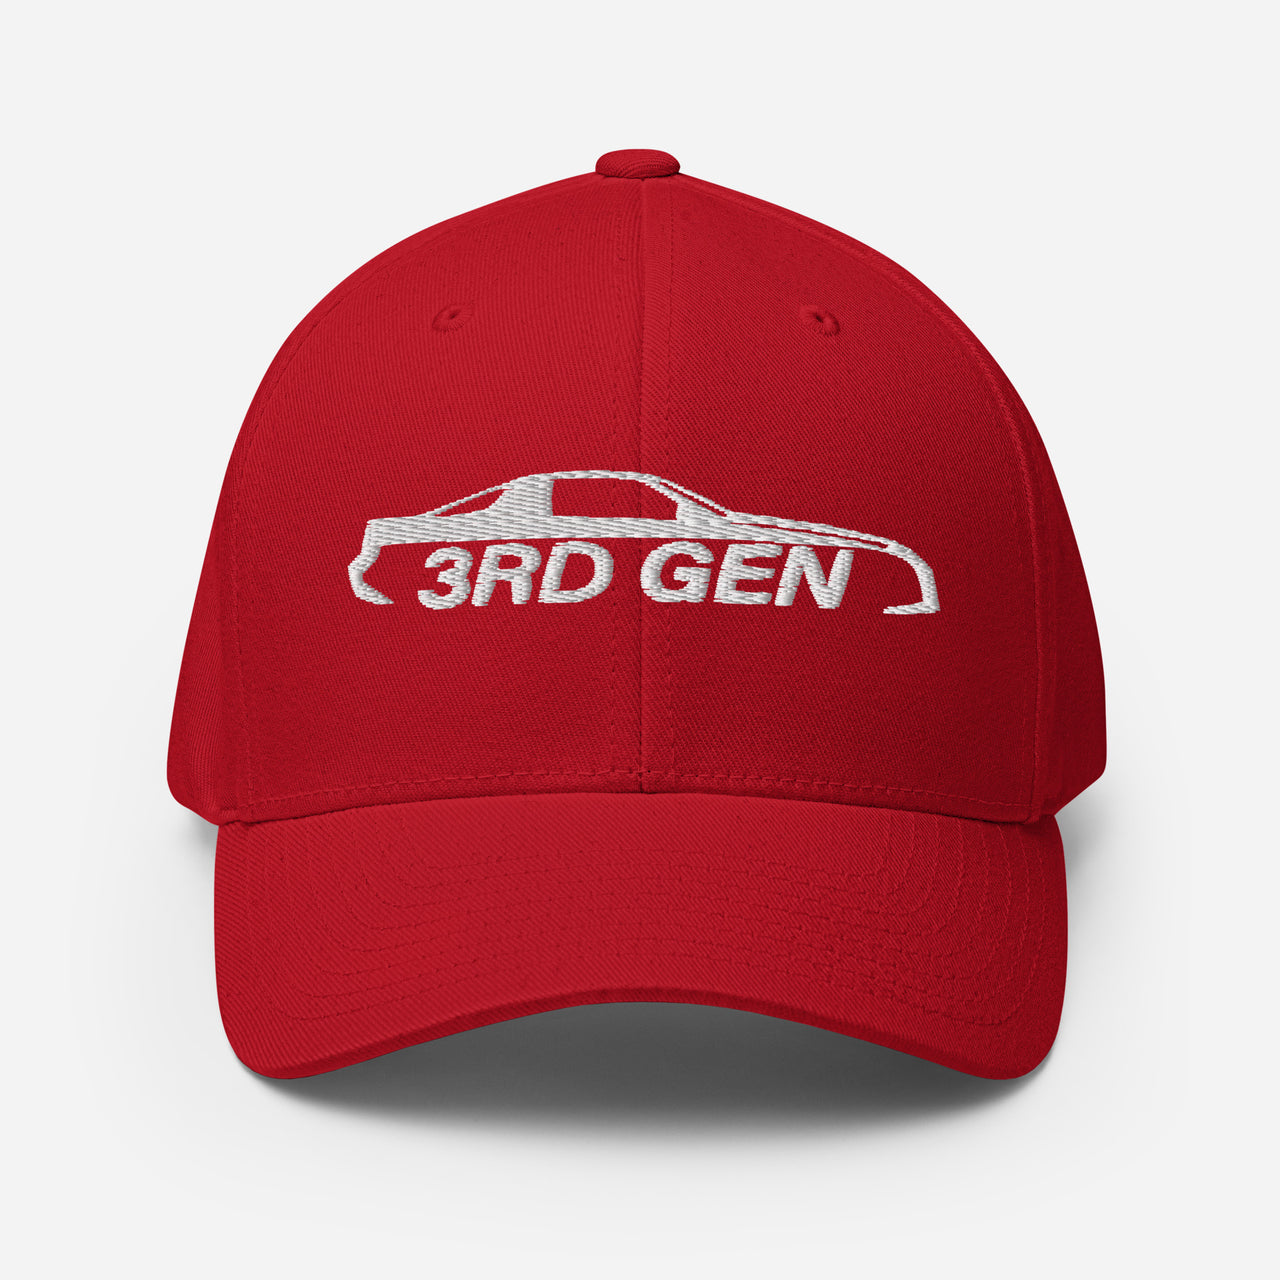 Third Gen Camaro Hat Flexfit Cap in red